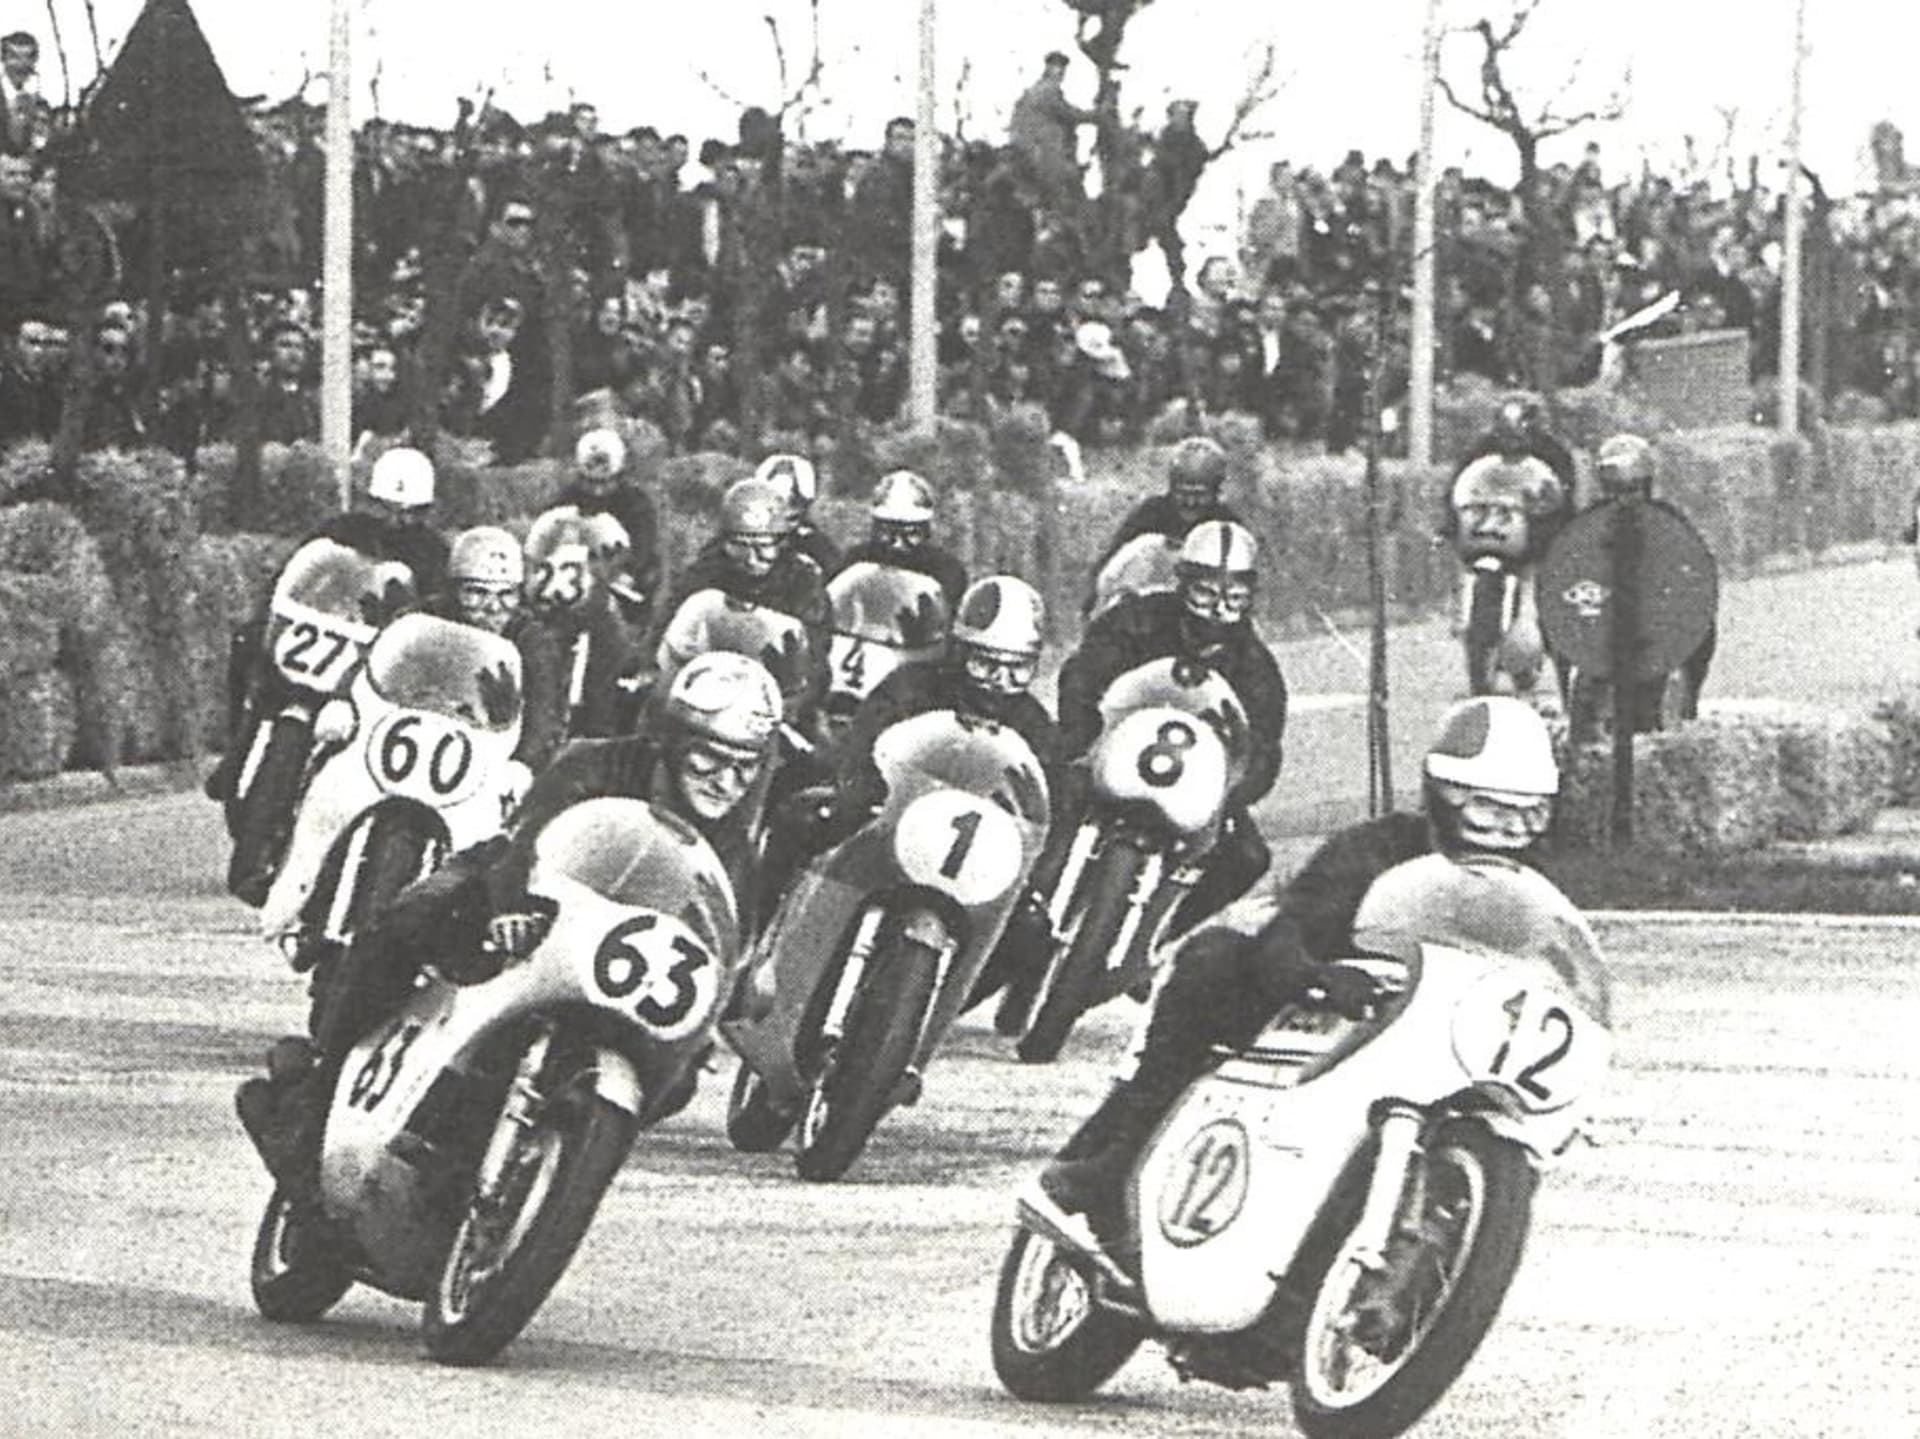 Před vyškrtnutím TT z termínové listiny mistrovství světa silničních motocyklů jej vyhrály hvězdy jako Mike Hailwood (na snímku s číslem 63, Honda) či Giacomo Agostini (číslo 1, MV Agusta).